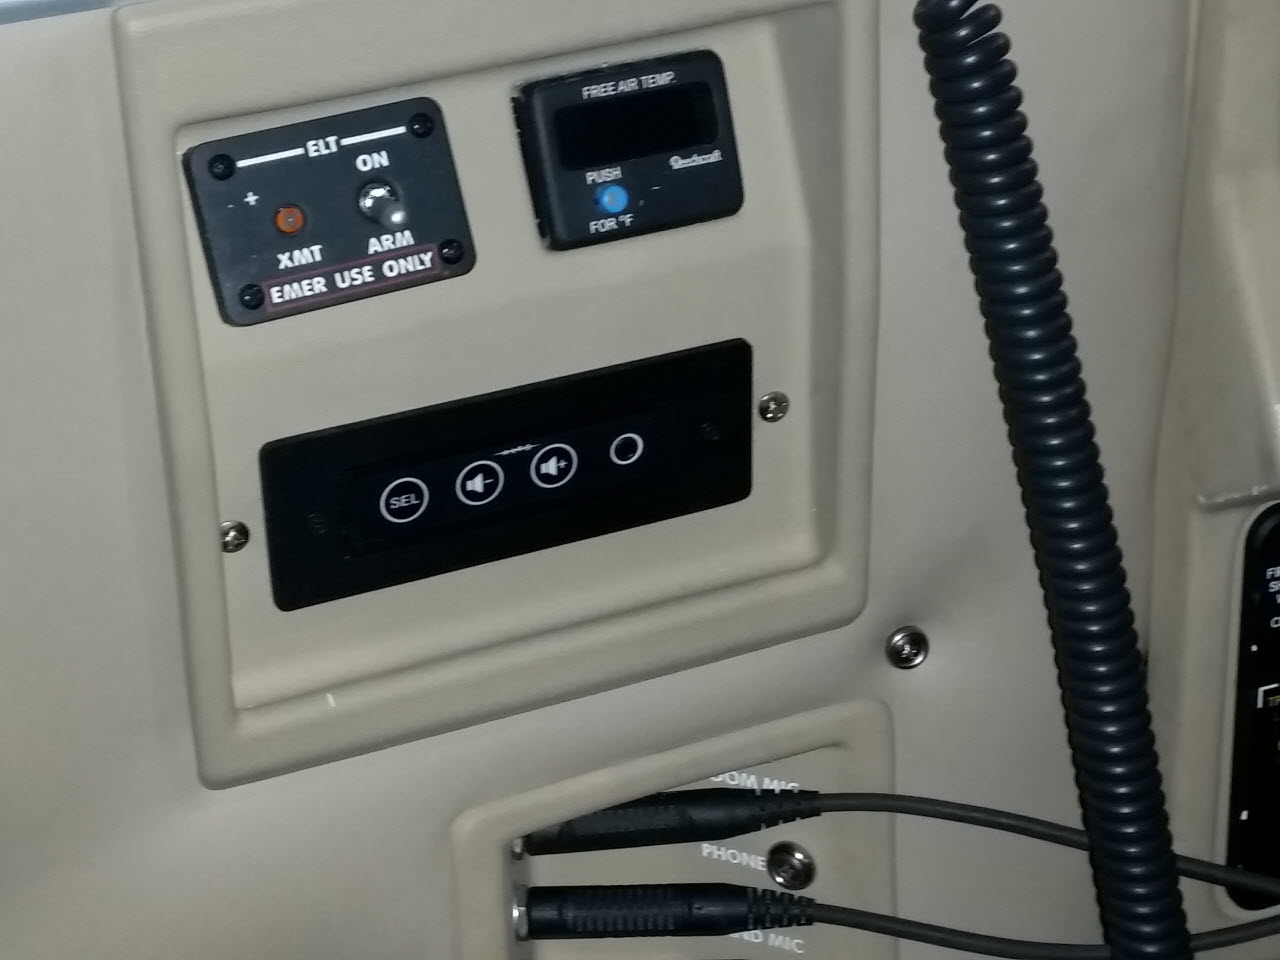 ALTO Aviation – Premium Cabin Audio, IFE & Cabin Control for Business  Aviation